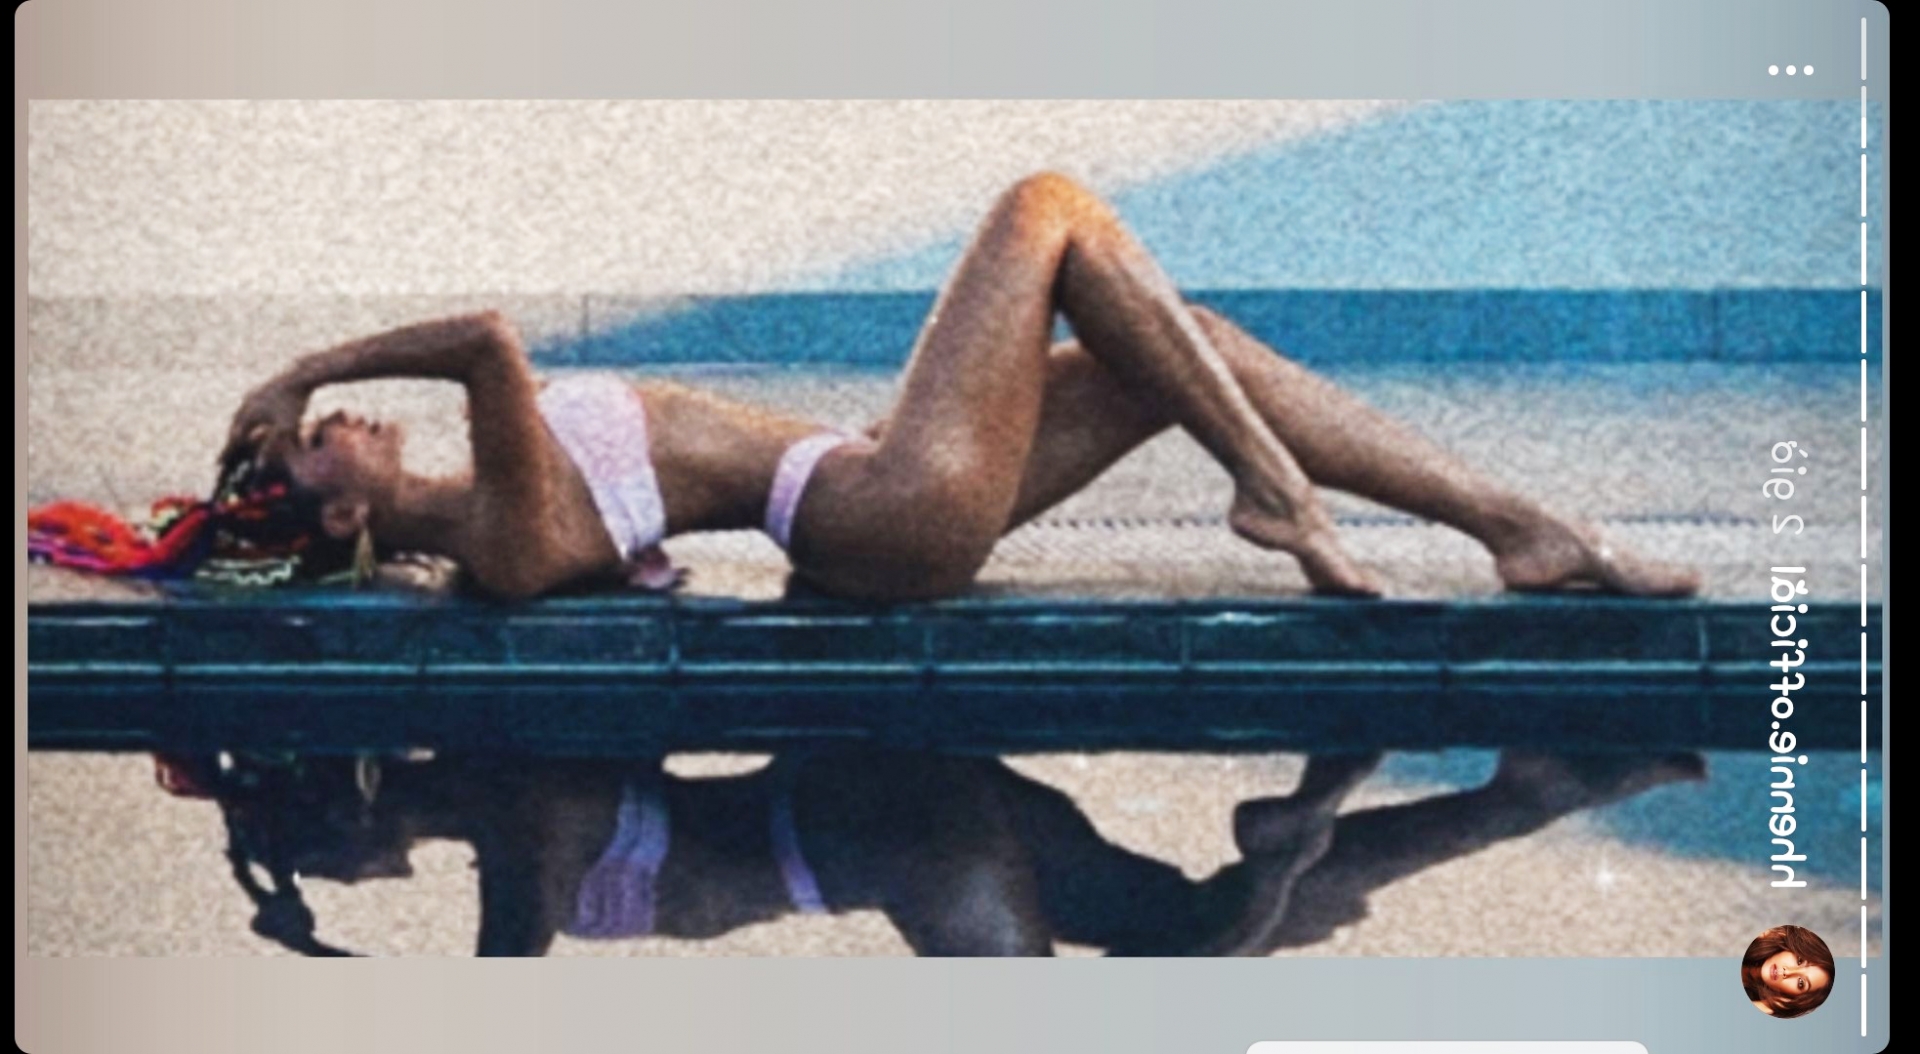 Quên Kendall Jenner ngồi sưởi nắng đi, nhìn H'Hen Niê đi dạo bể bơi đây này - Ảnh 1